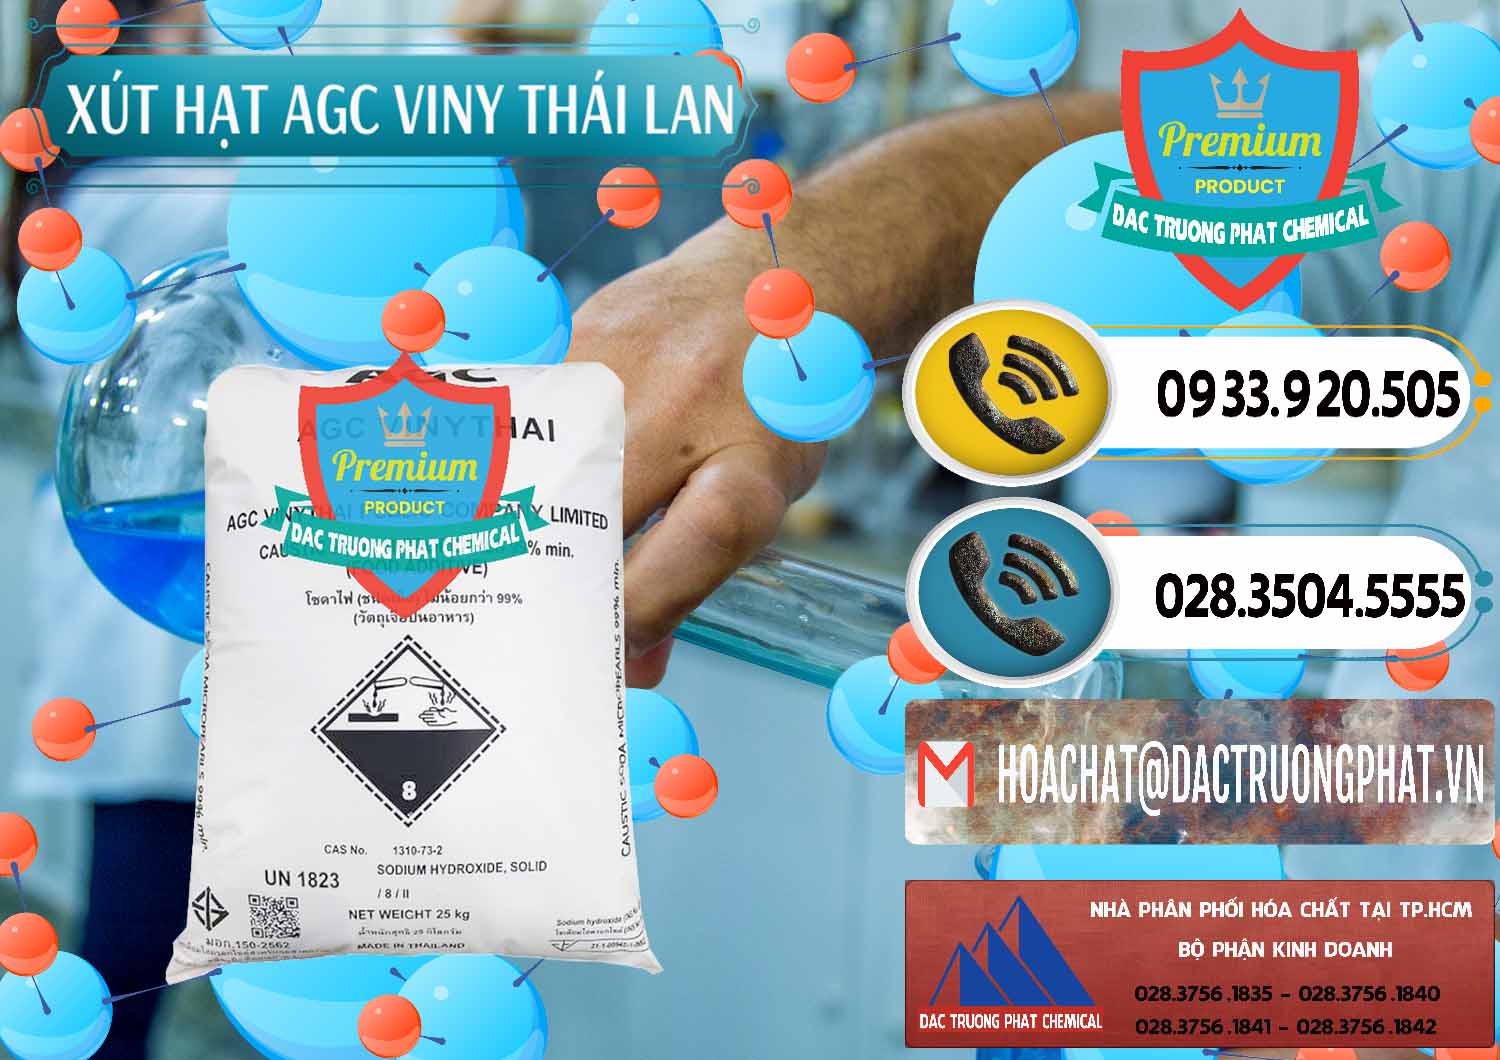 Công ty kinh doanh _ bán Xút Hạt - NaOH Bột 99% AGC Viny Thái Lan - 0399 - Chuyên cung ứng - phân phối hóa chất tại TP.HCM - hoachatdetnhuom.vn